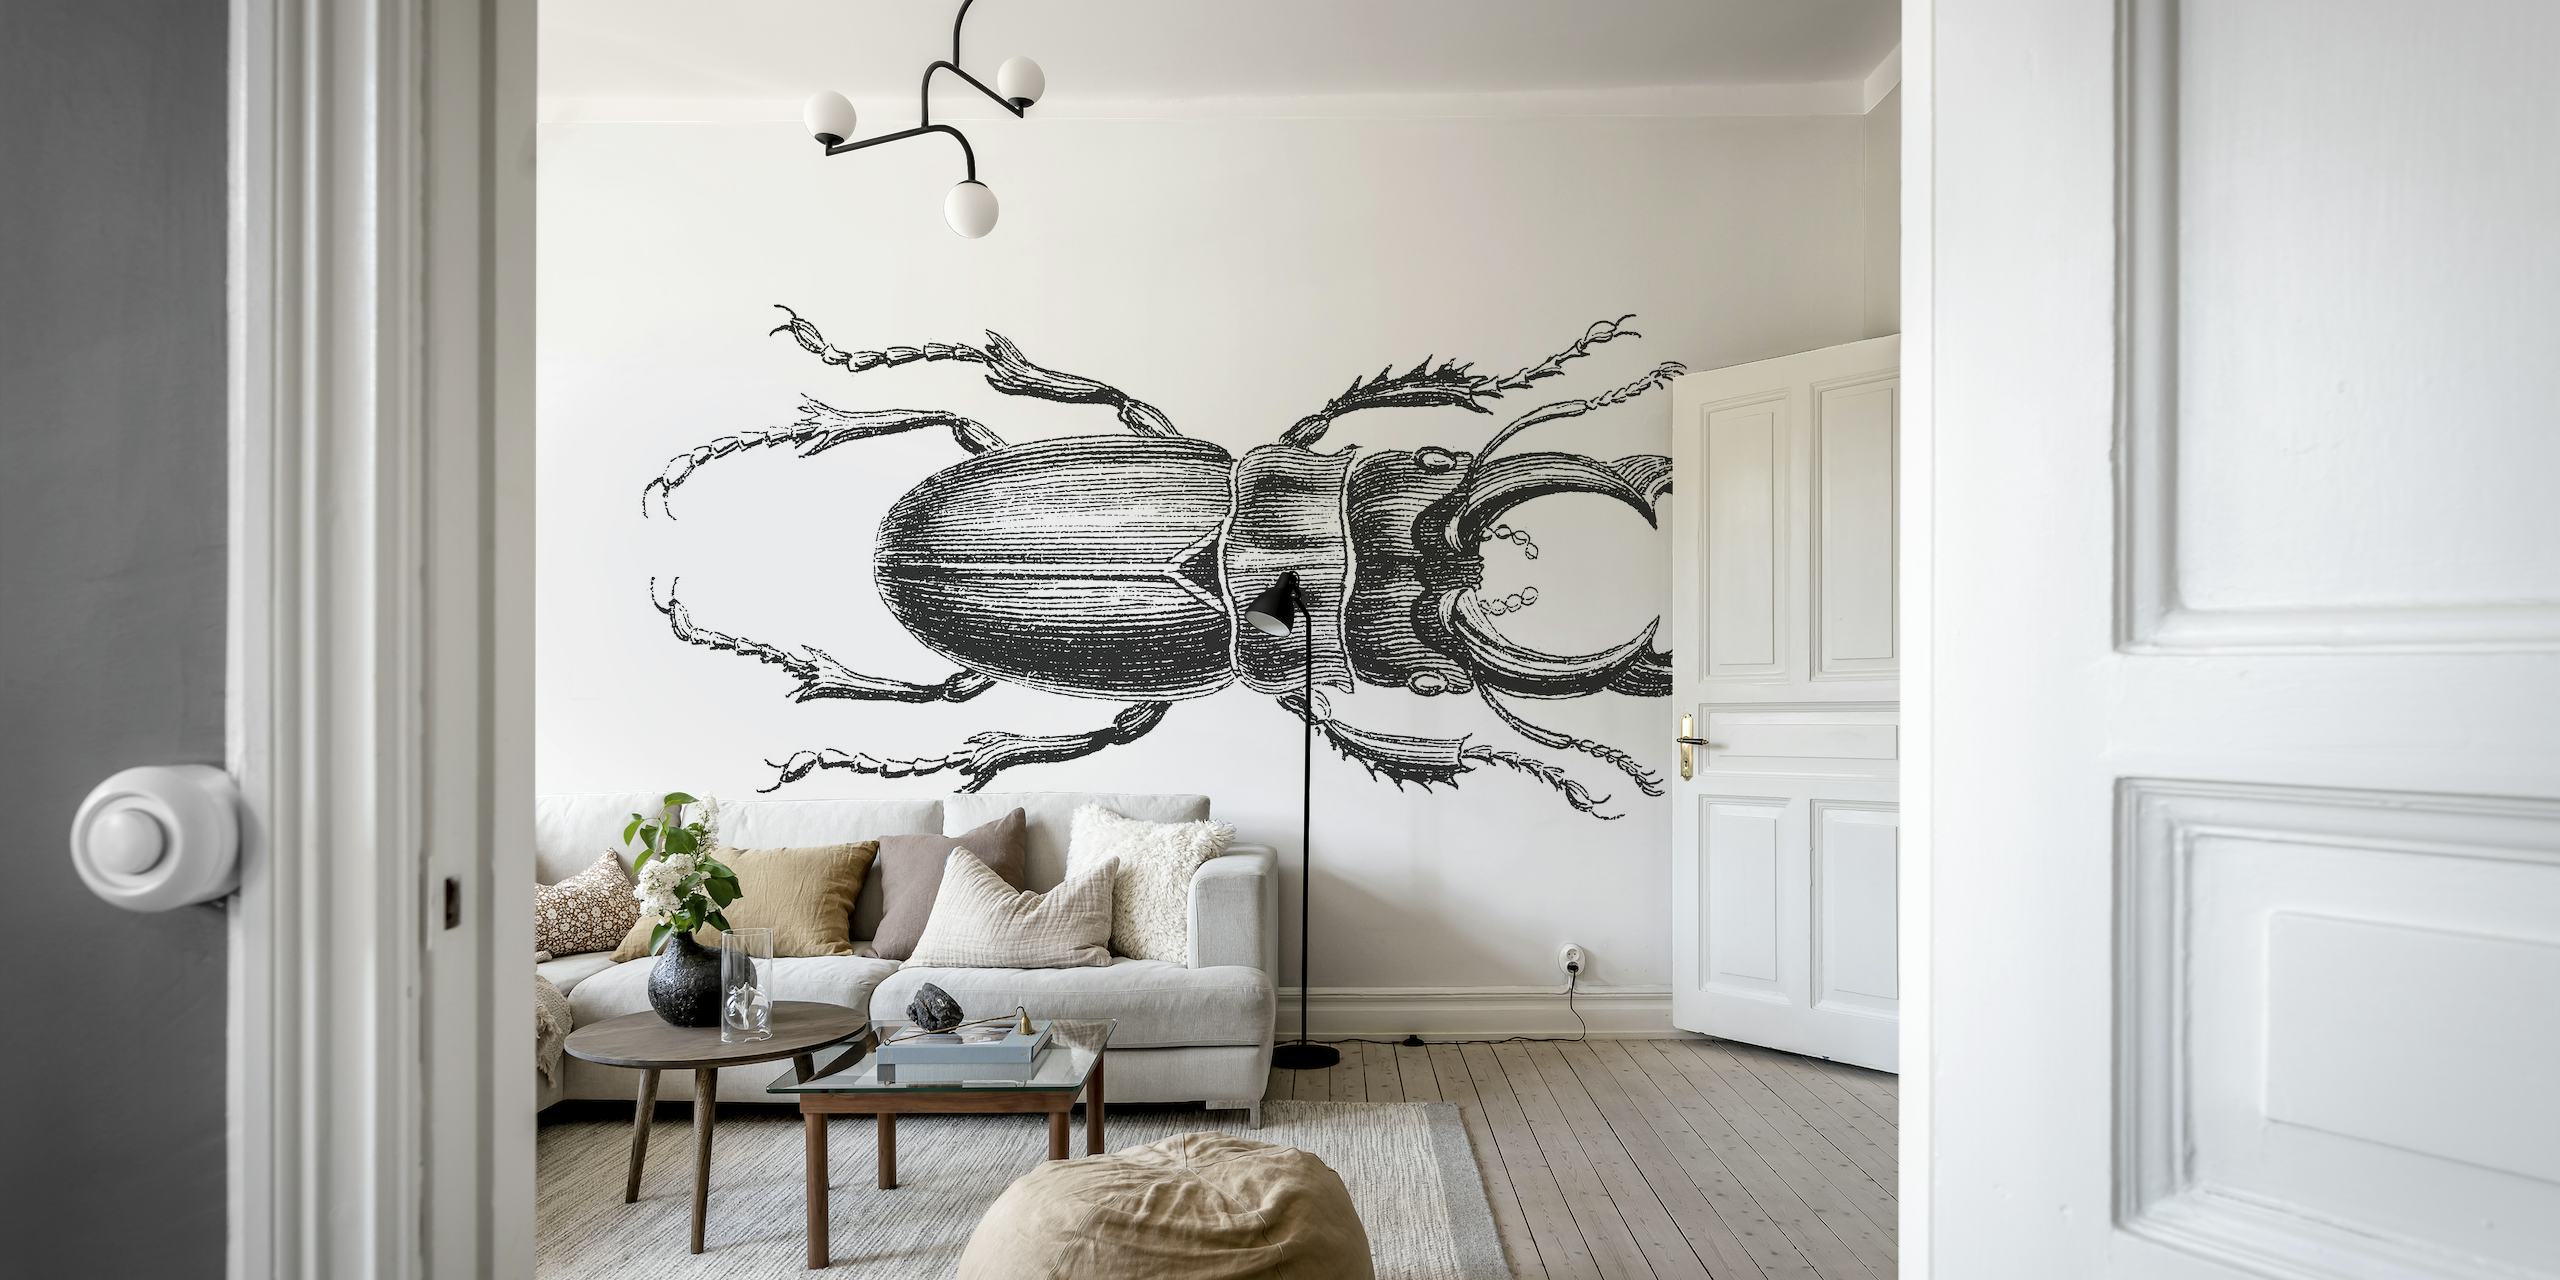 Stag Beetle Drawing seinämaalaus mustavalkoisena sketch-tyyliin